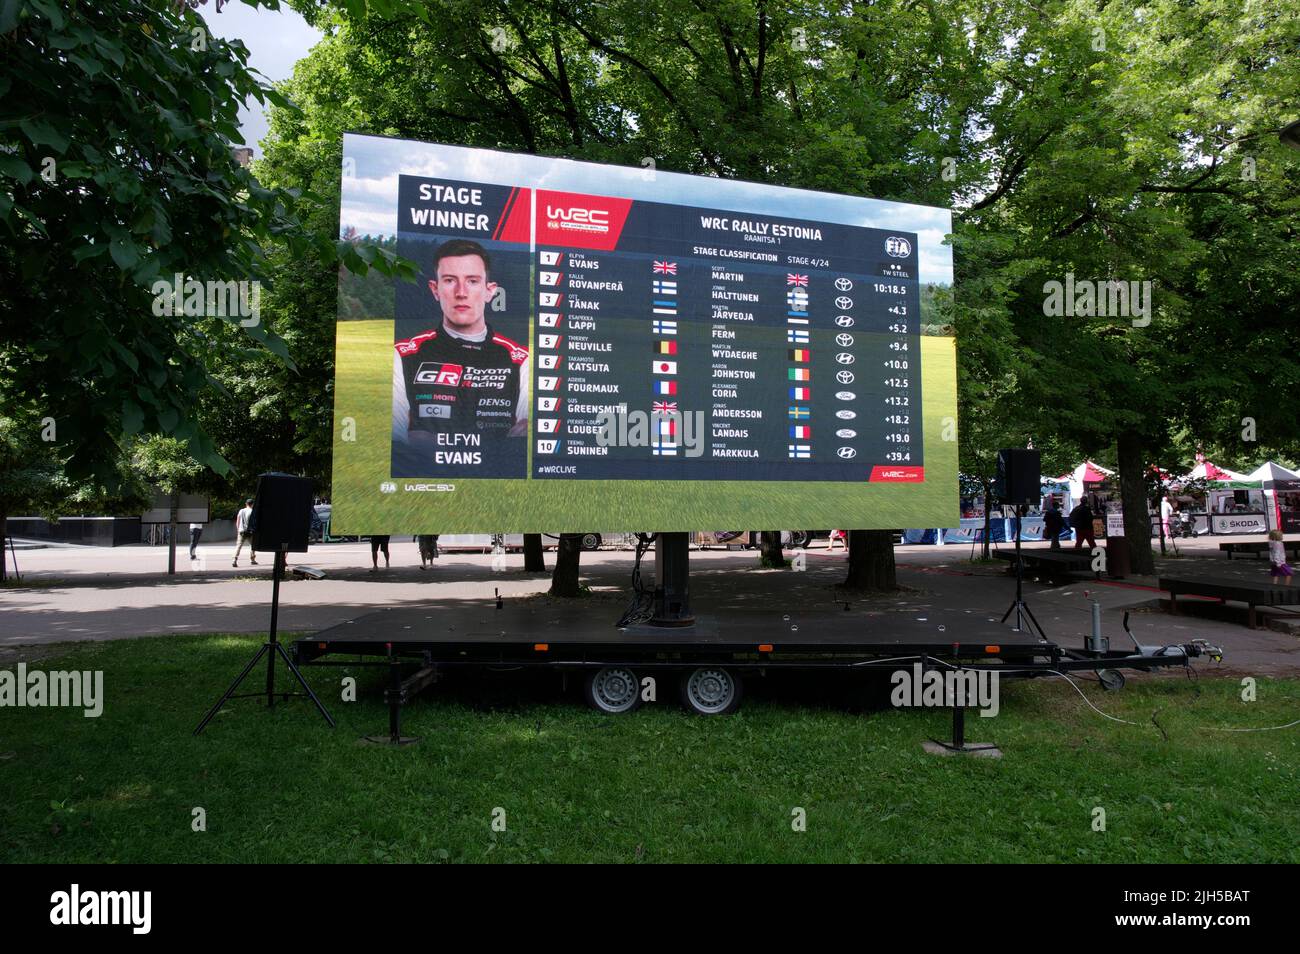 Die große Leinwand im Stadtpark von Tartu zeigt, dass Elfyn Evans die Etappe 4. gewonnen hat. WRC Estland 2022 Stockfoto